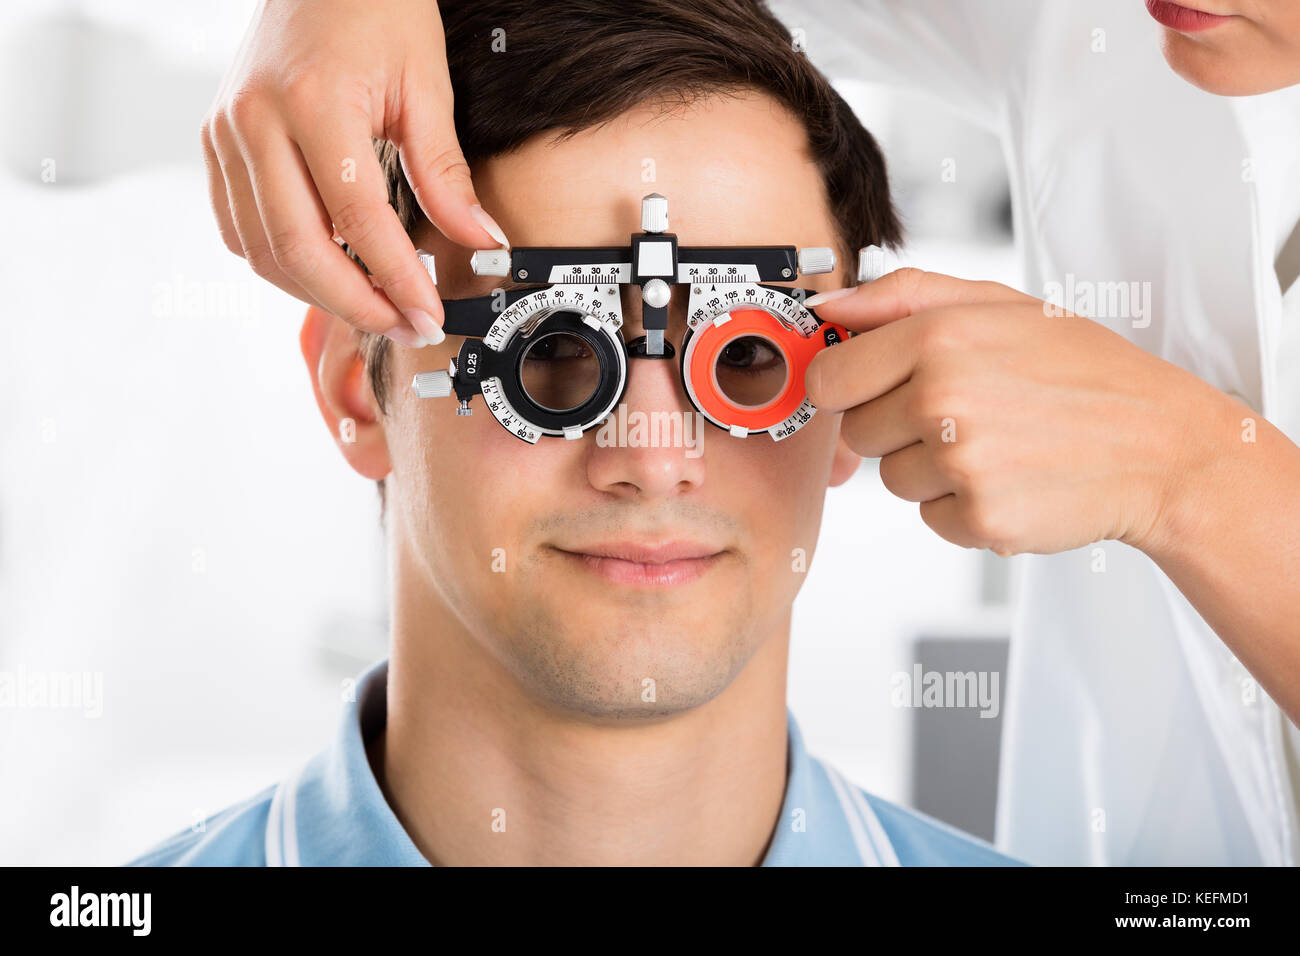 Оптометрист кто это. Очки офтальмолога. Человек у офтальмолога. Обследование глаз. Офтальмологические очки для коррекции зрения.